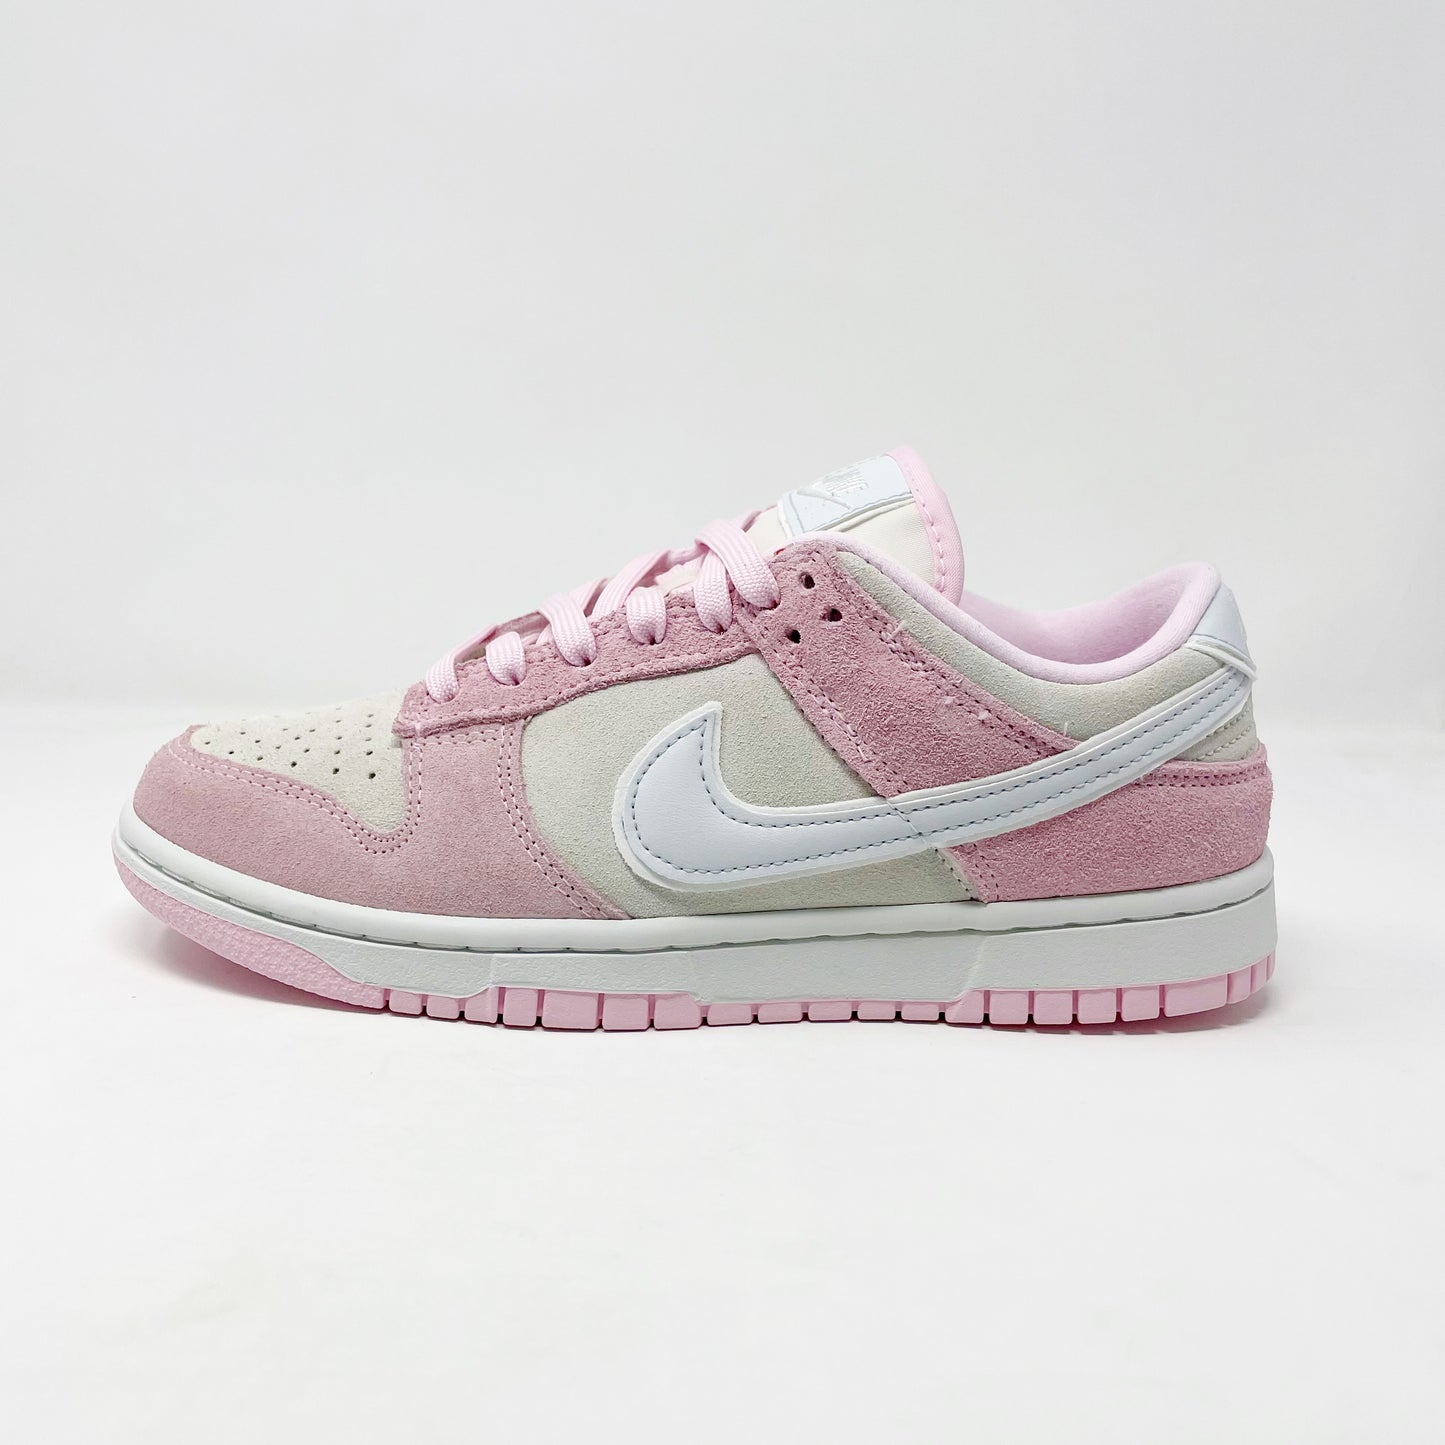 Nike Dunk Low “Pink Foam” (W)